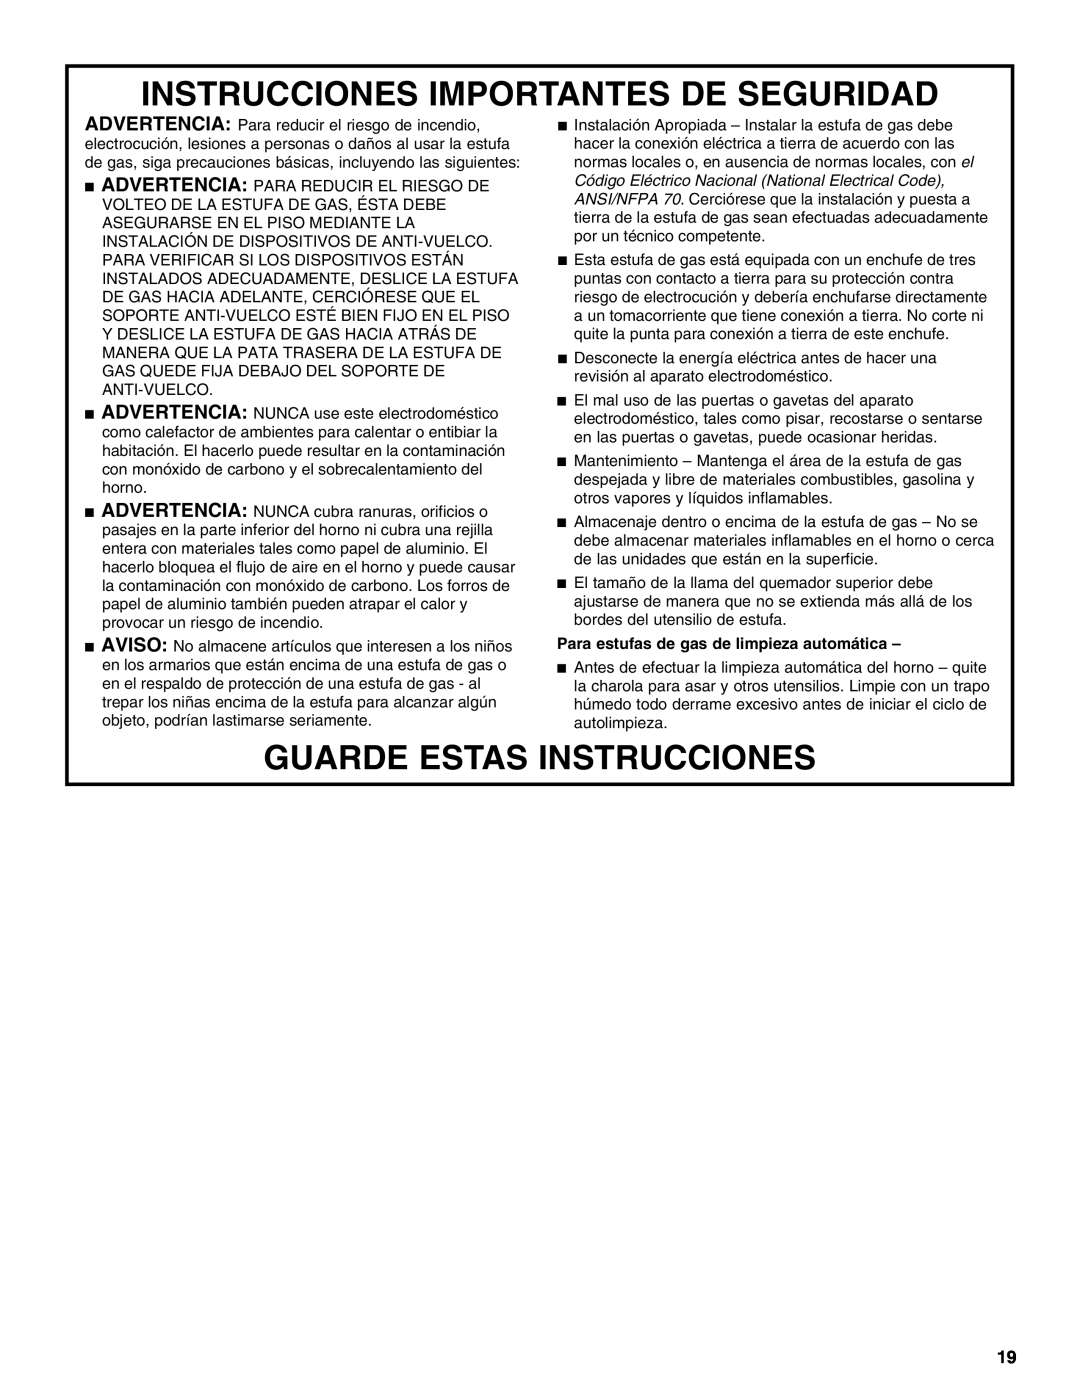 Whirlpool W10099470 manual Instrucciones Importantes De Seguridad, Guarde Estas Instrucciones 